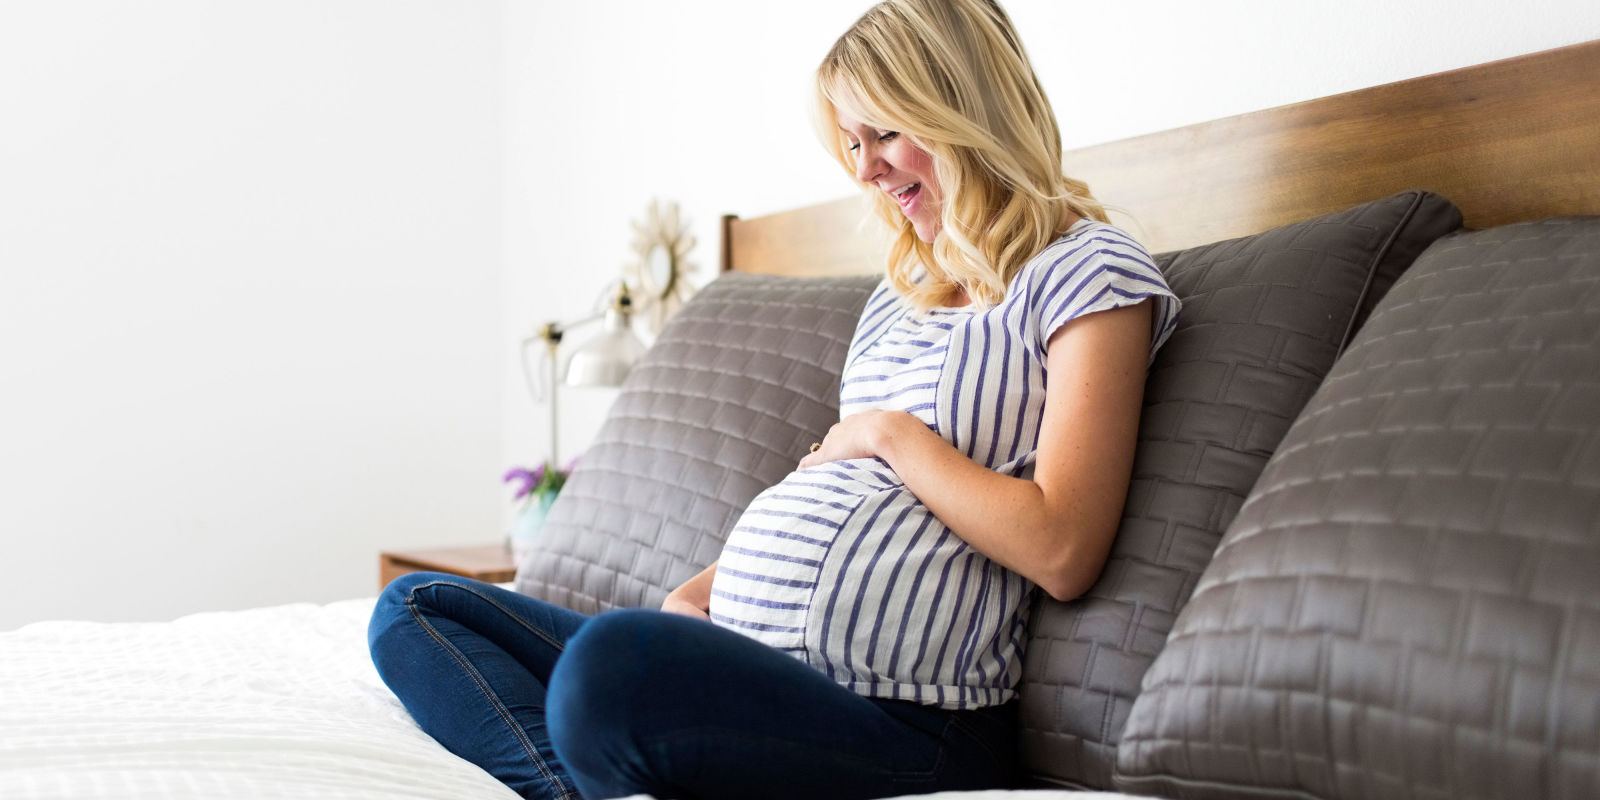 ΗΠΑ: Έρευνα αποκαλύπτει πως μια στις 200 γυναίκες έμεινε έγκυος χωρίς…ερωτική πράξη